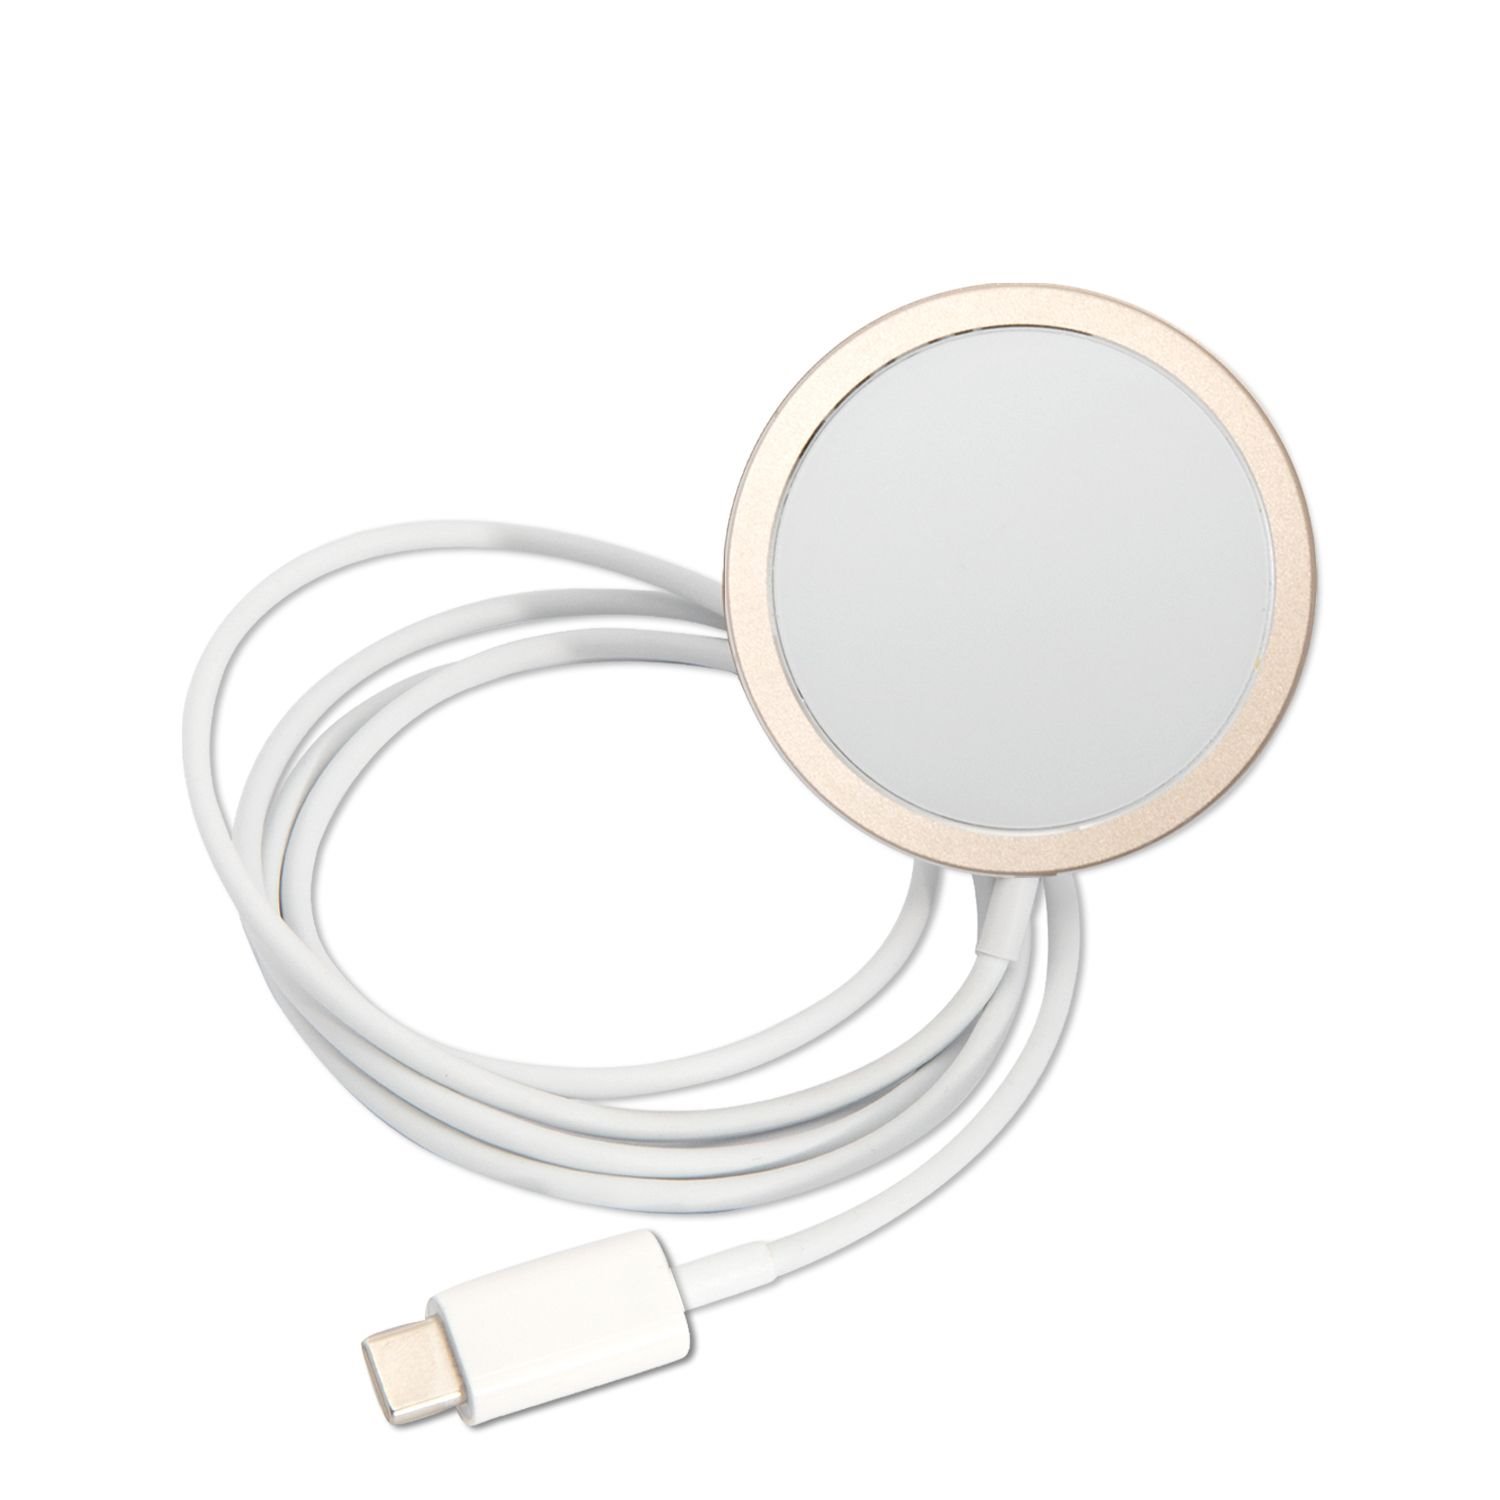 Kompatibilný zadný kryt Guess 4G MagSafe + bezdrôtová nabíjačka pre Apple iPhone 14 Pro, hnedá